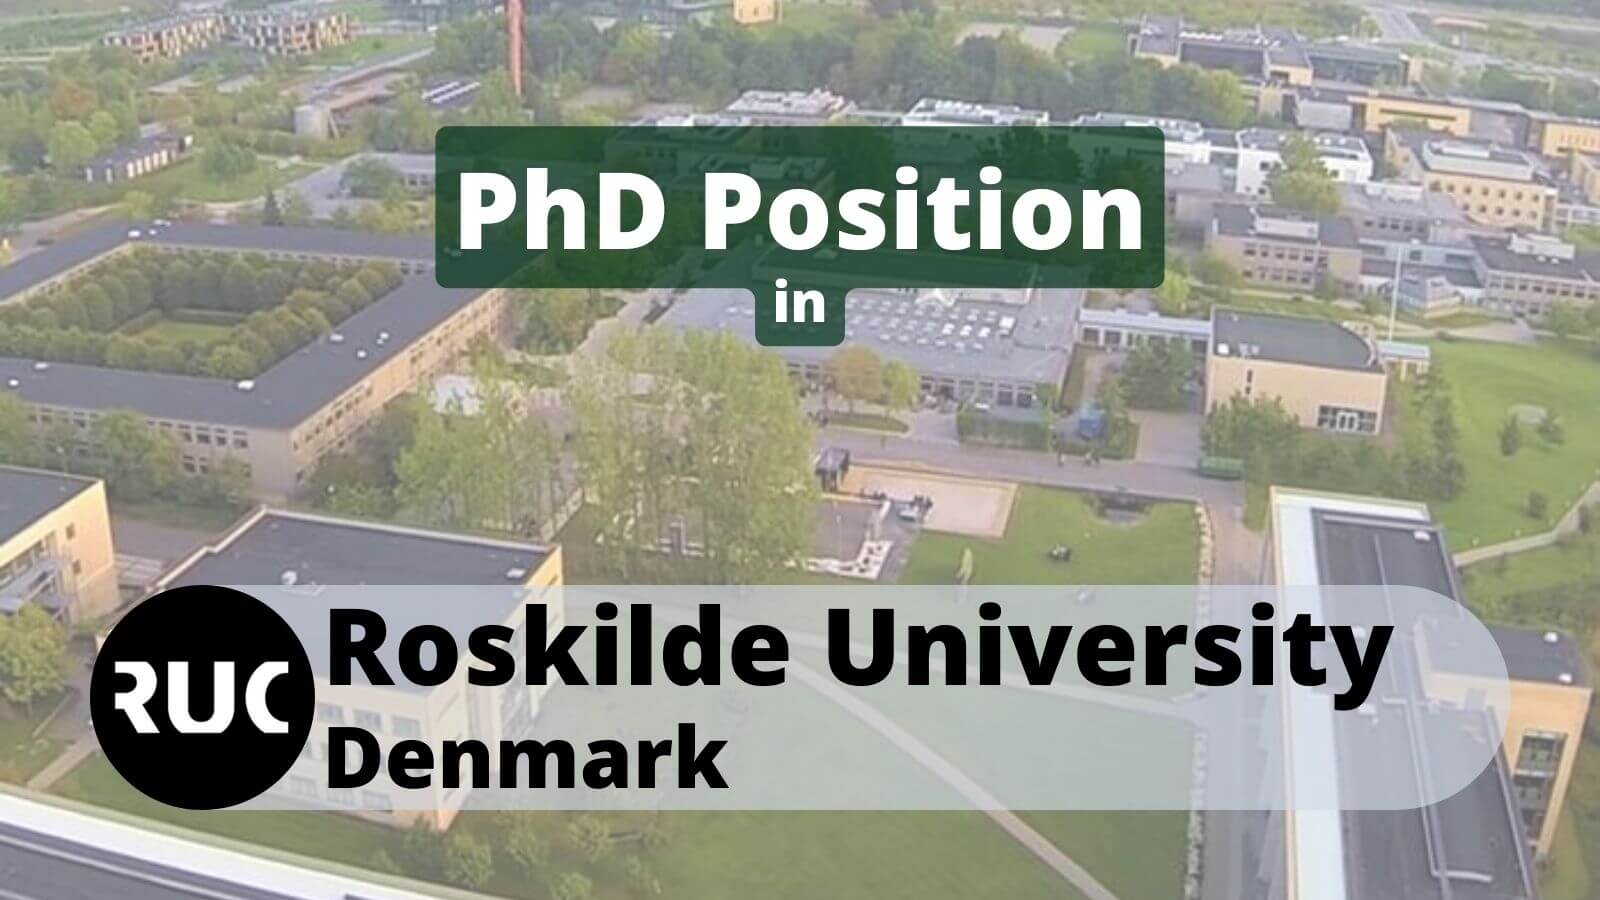 PhD Position in Roskilde University Denmark